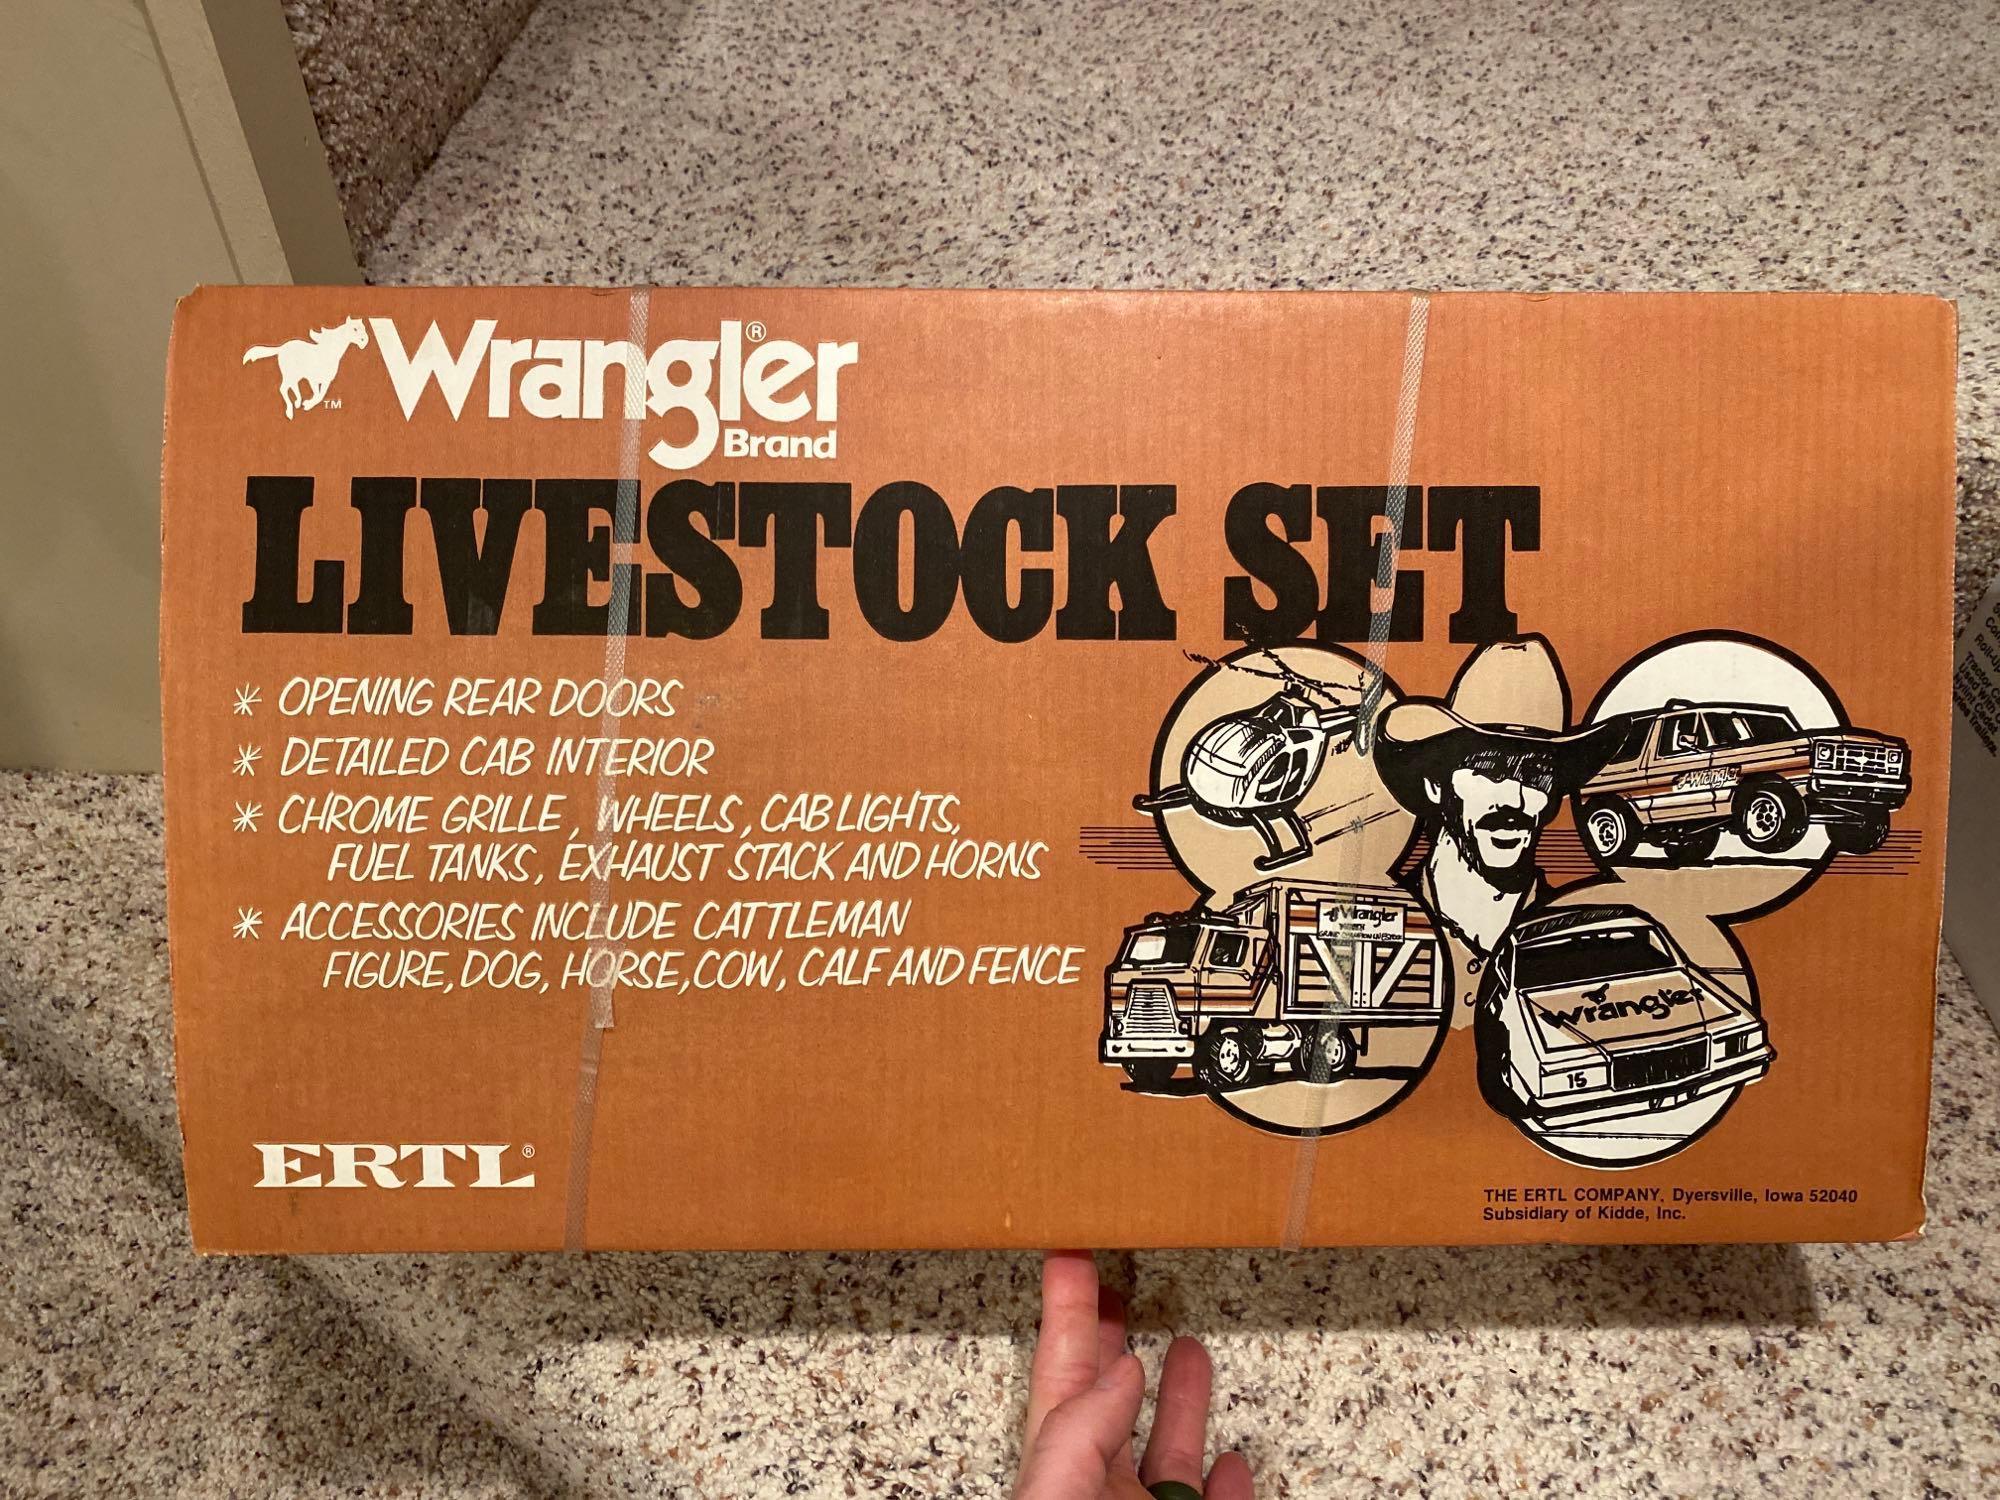 Ertl wrangler Livestock Set Steel